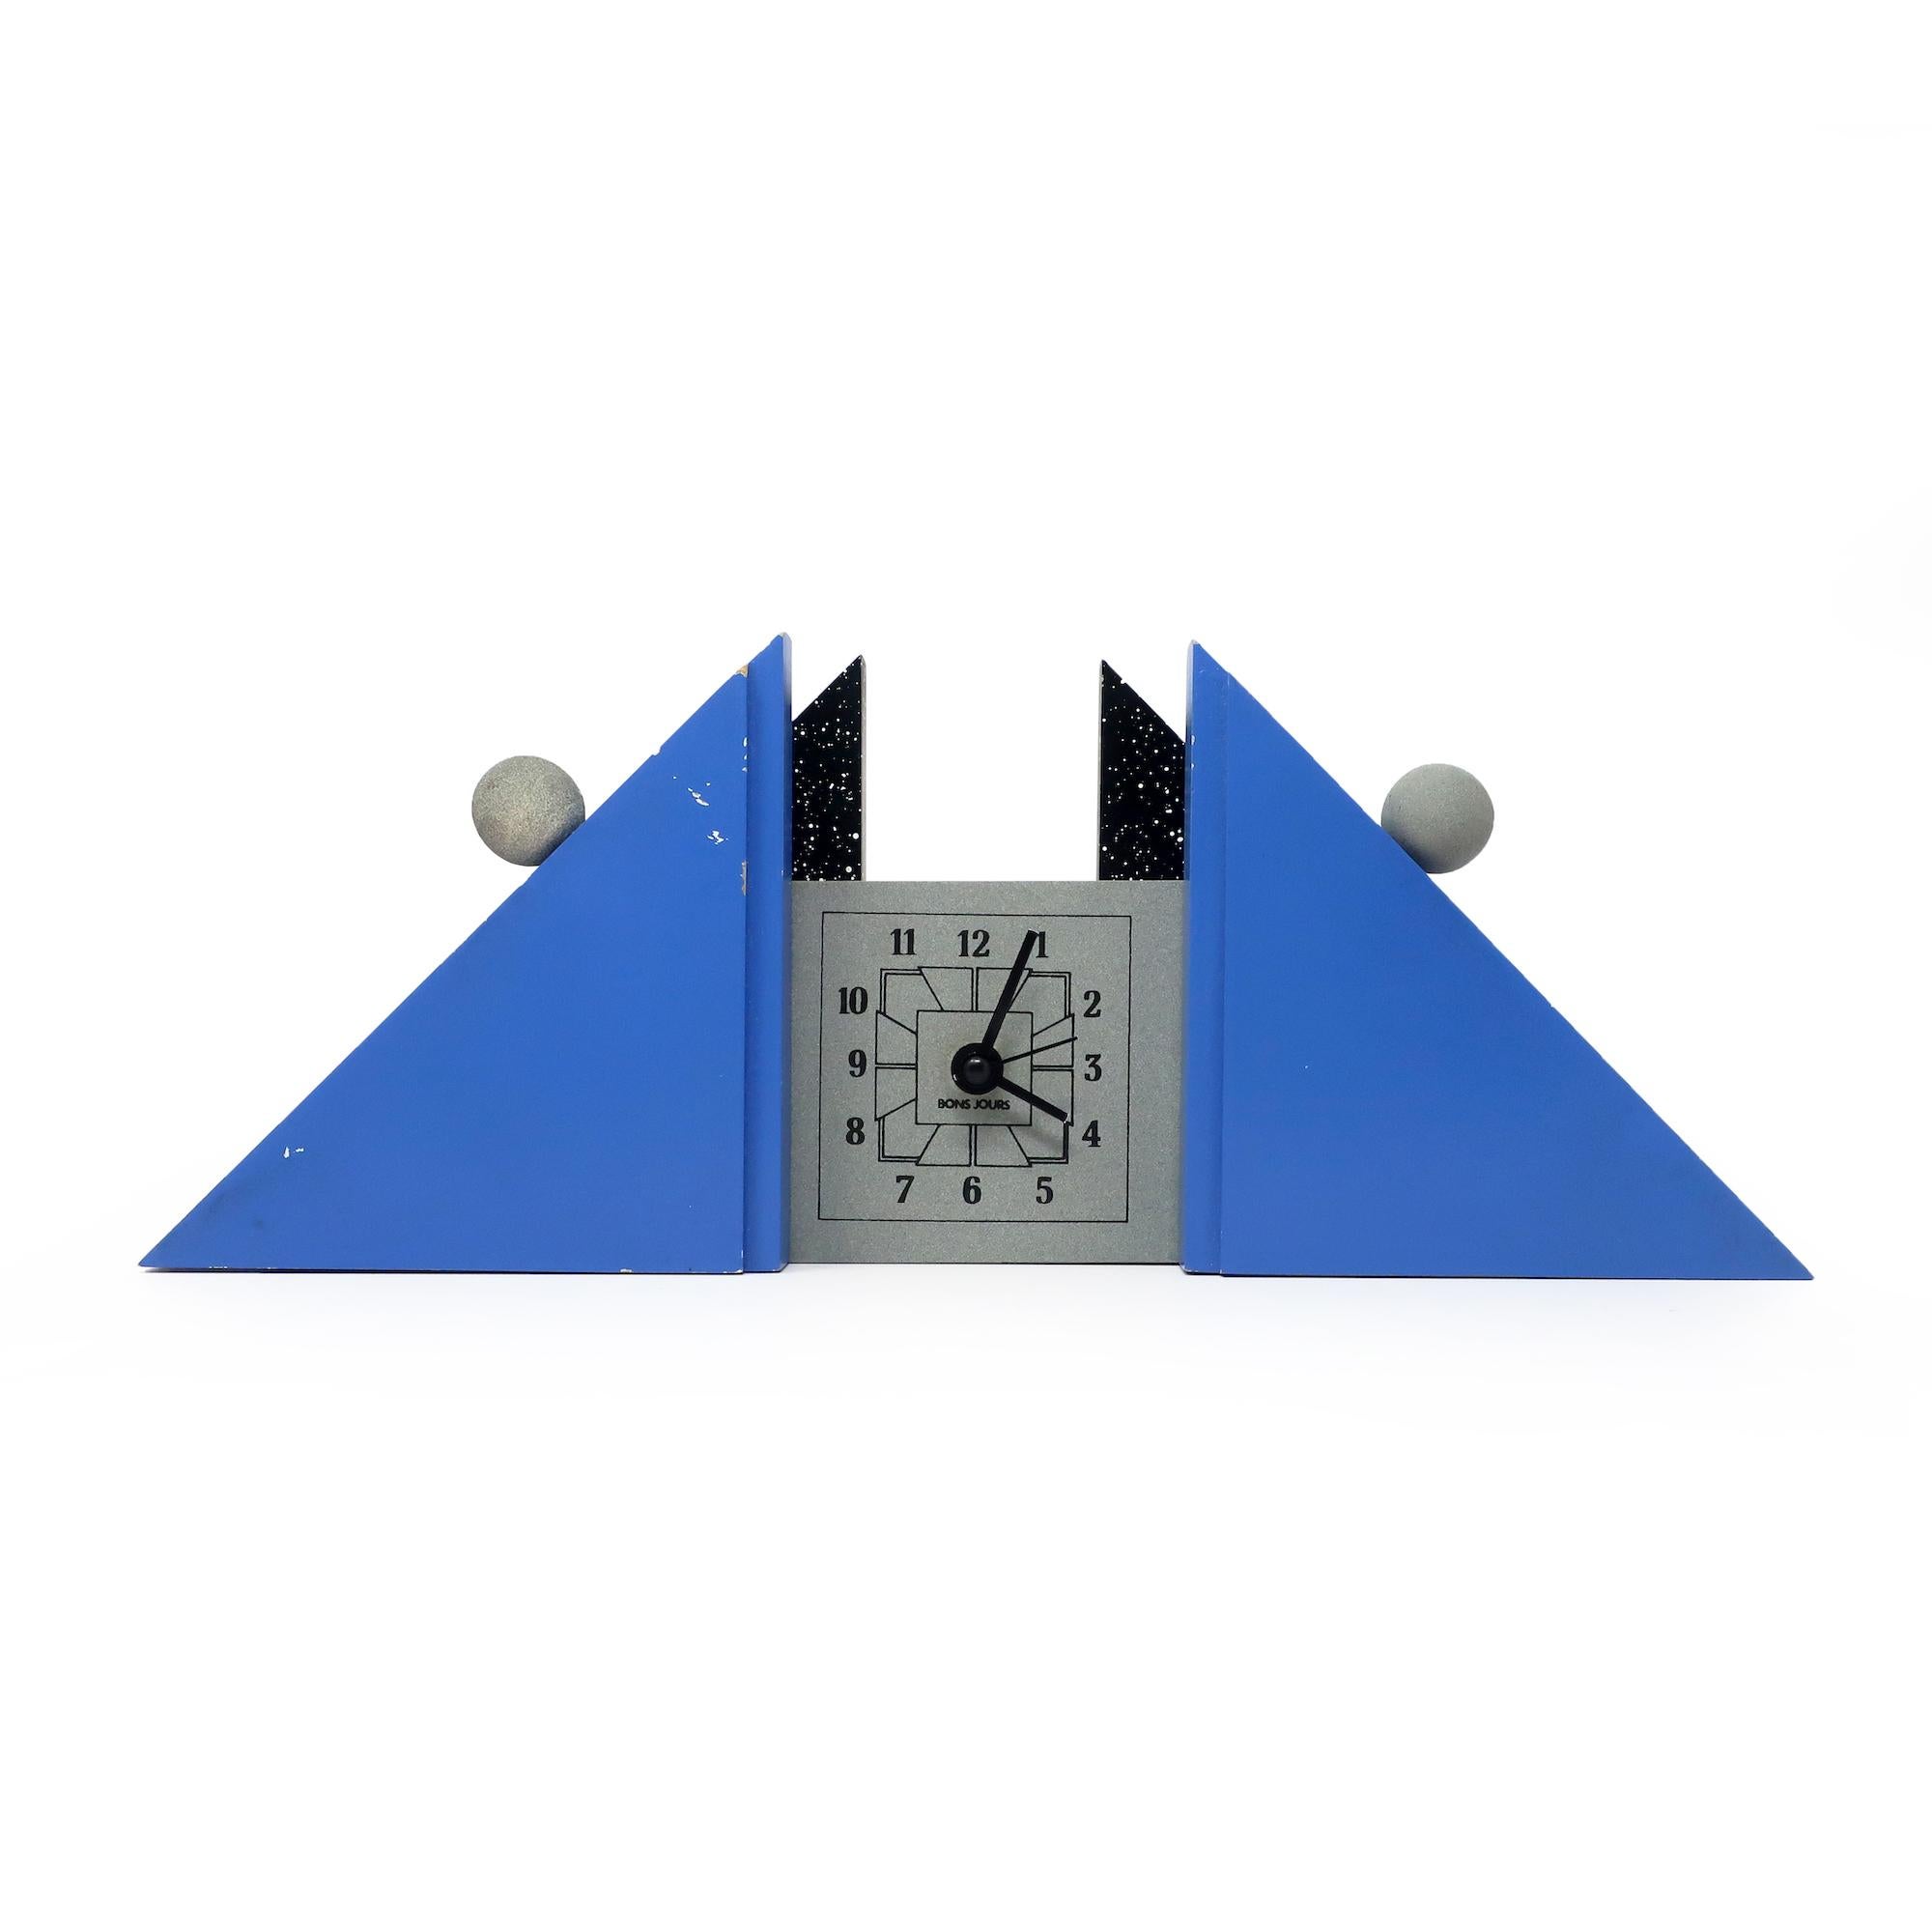 Une horloge de cheminée postmoderne française sculpturale avec des supports peints en bleu et en éclaboussures, un cadran et des accents gris, ainsi que des chiffres et des aiguilles noirs.  Une forme triangulaire basse fantastiquement contrastée